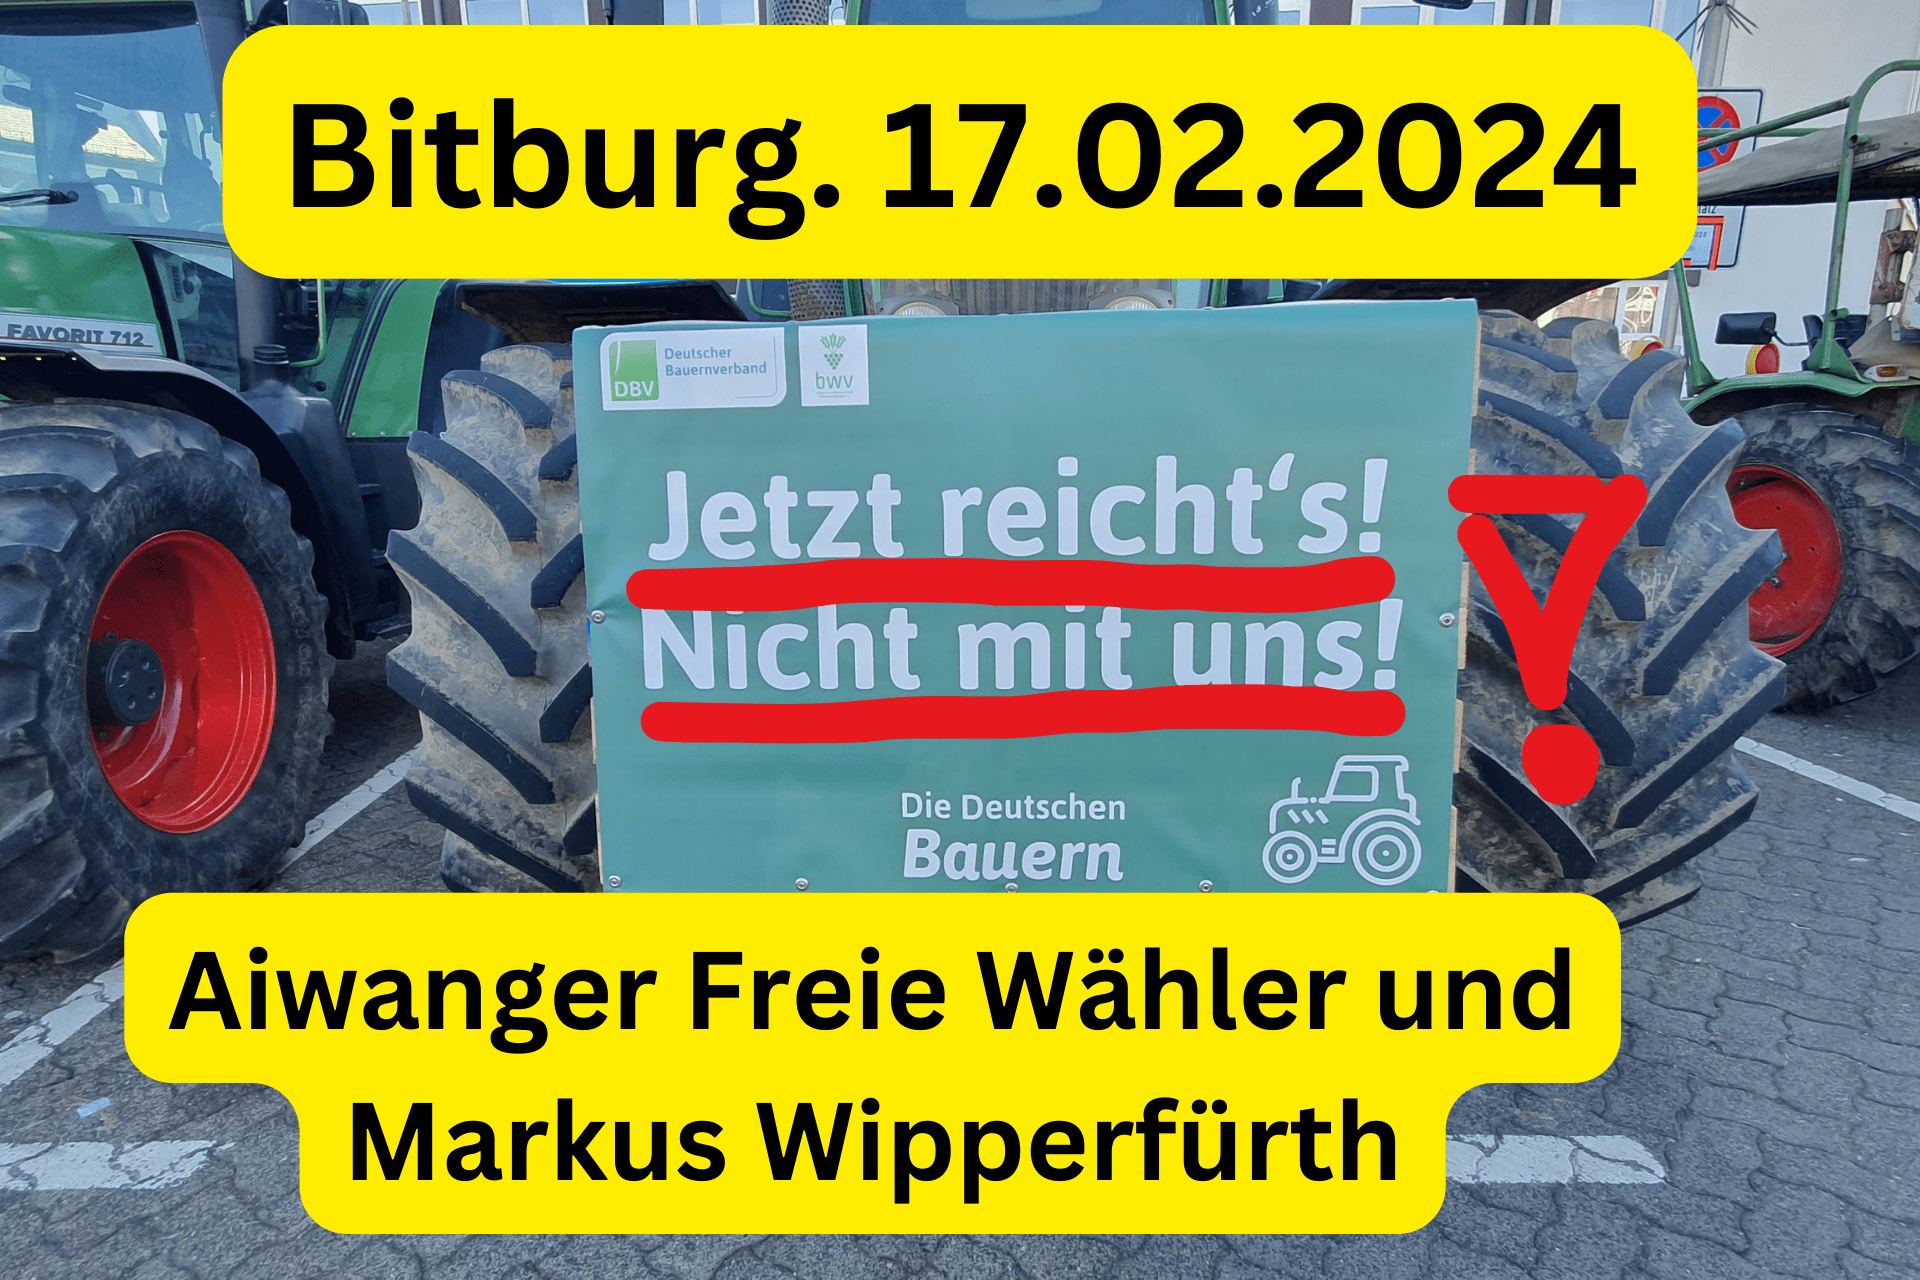 17.02.2024. Bitburg Aiwanger von den Freien Wähler und Markus Wipperfürth Bauern Demo Protest in Bitburg